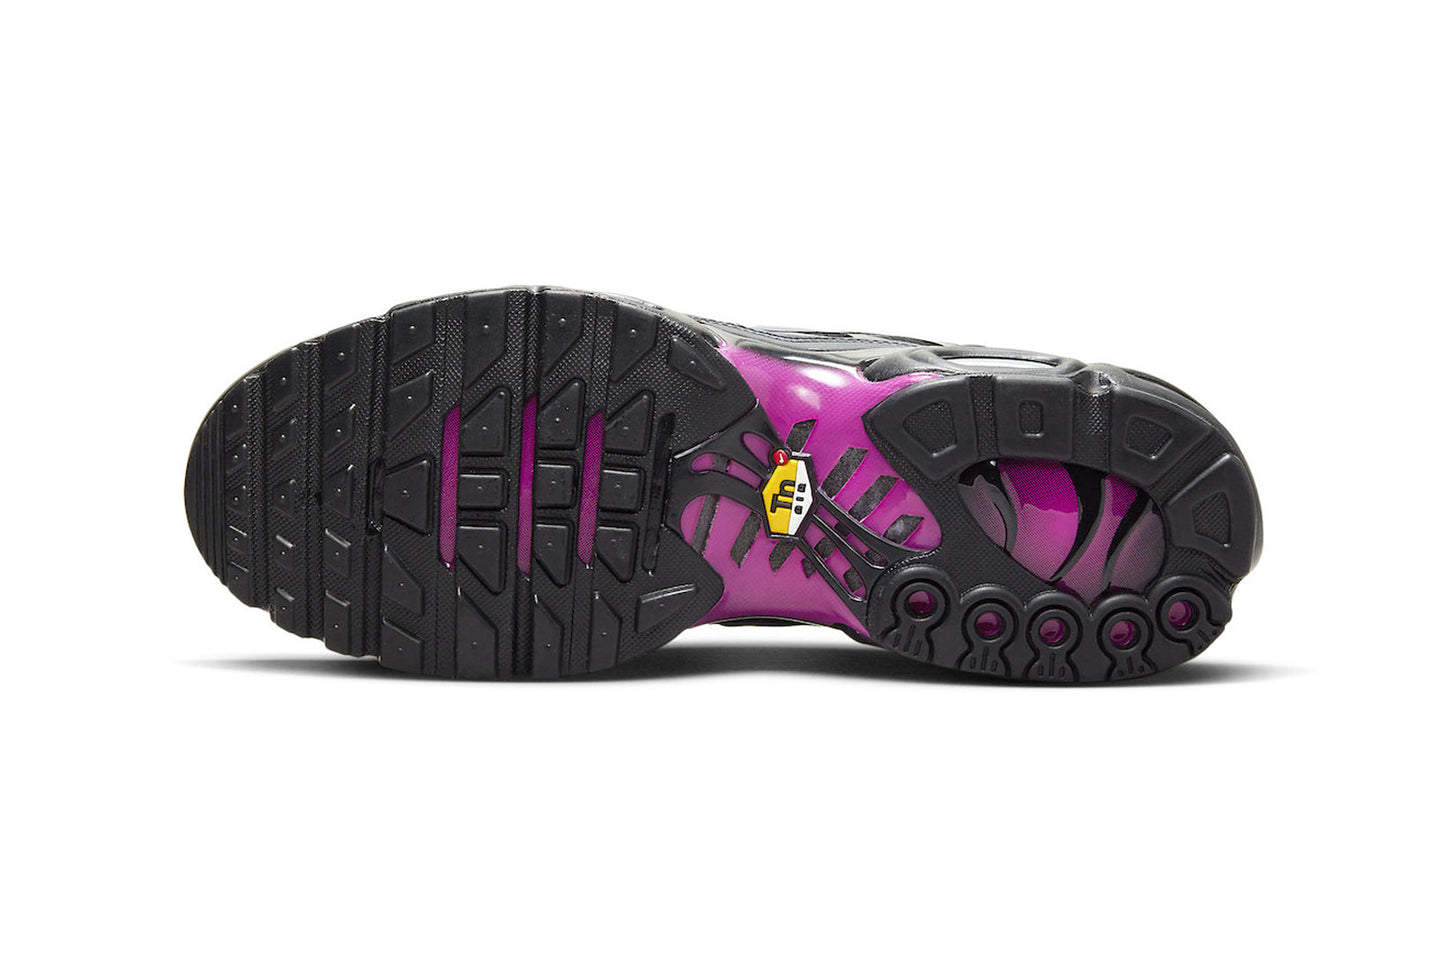 Nike Air Max Plus 'Black/Pink'